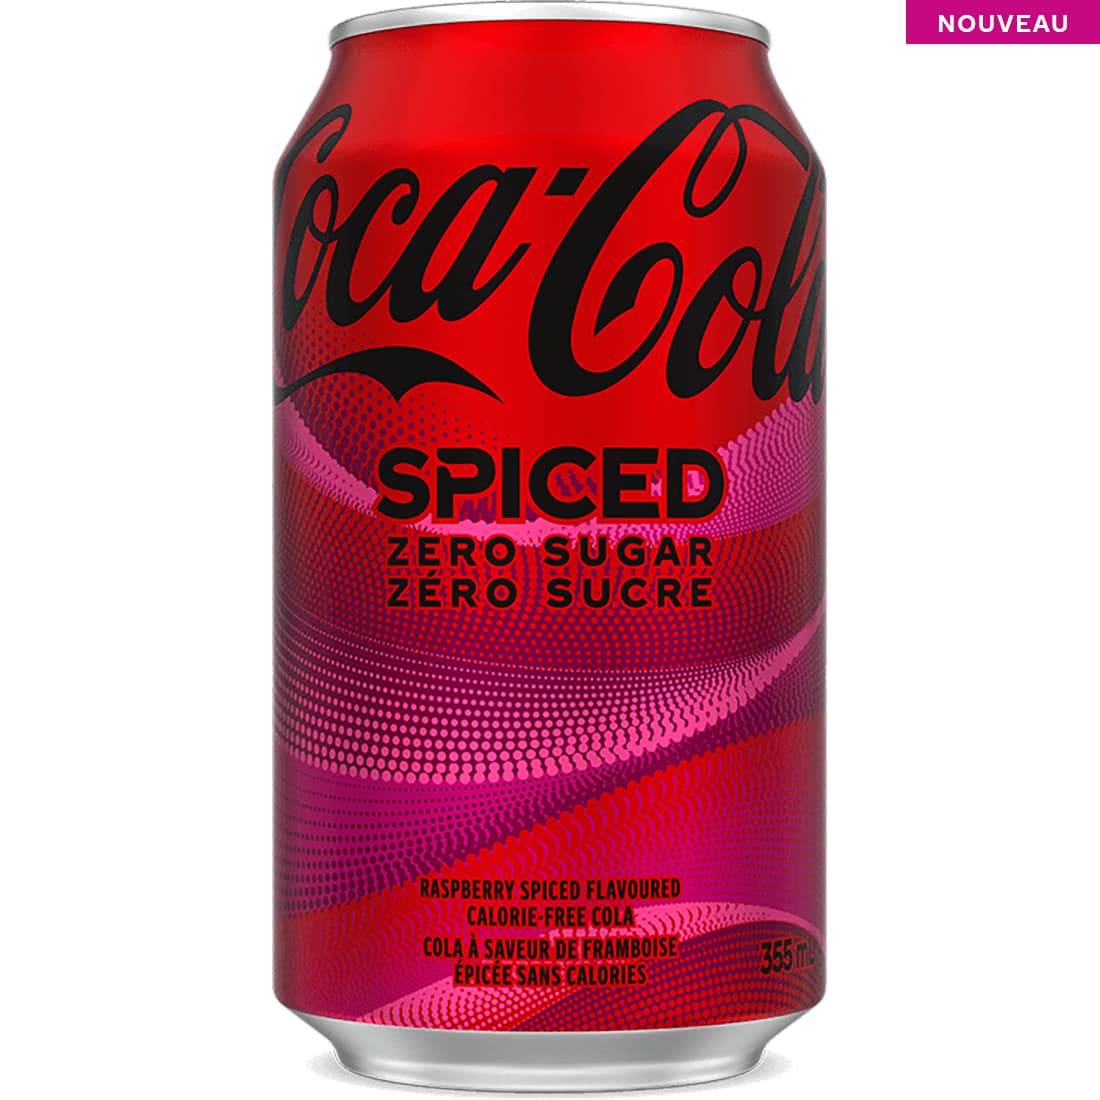 NOUVEAU Coca-Cola Spiced Zéro Sucre 355 mL canette